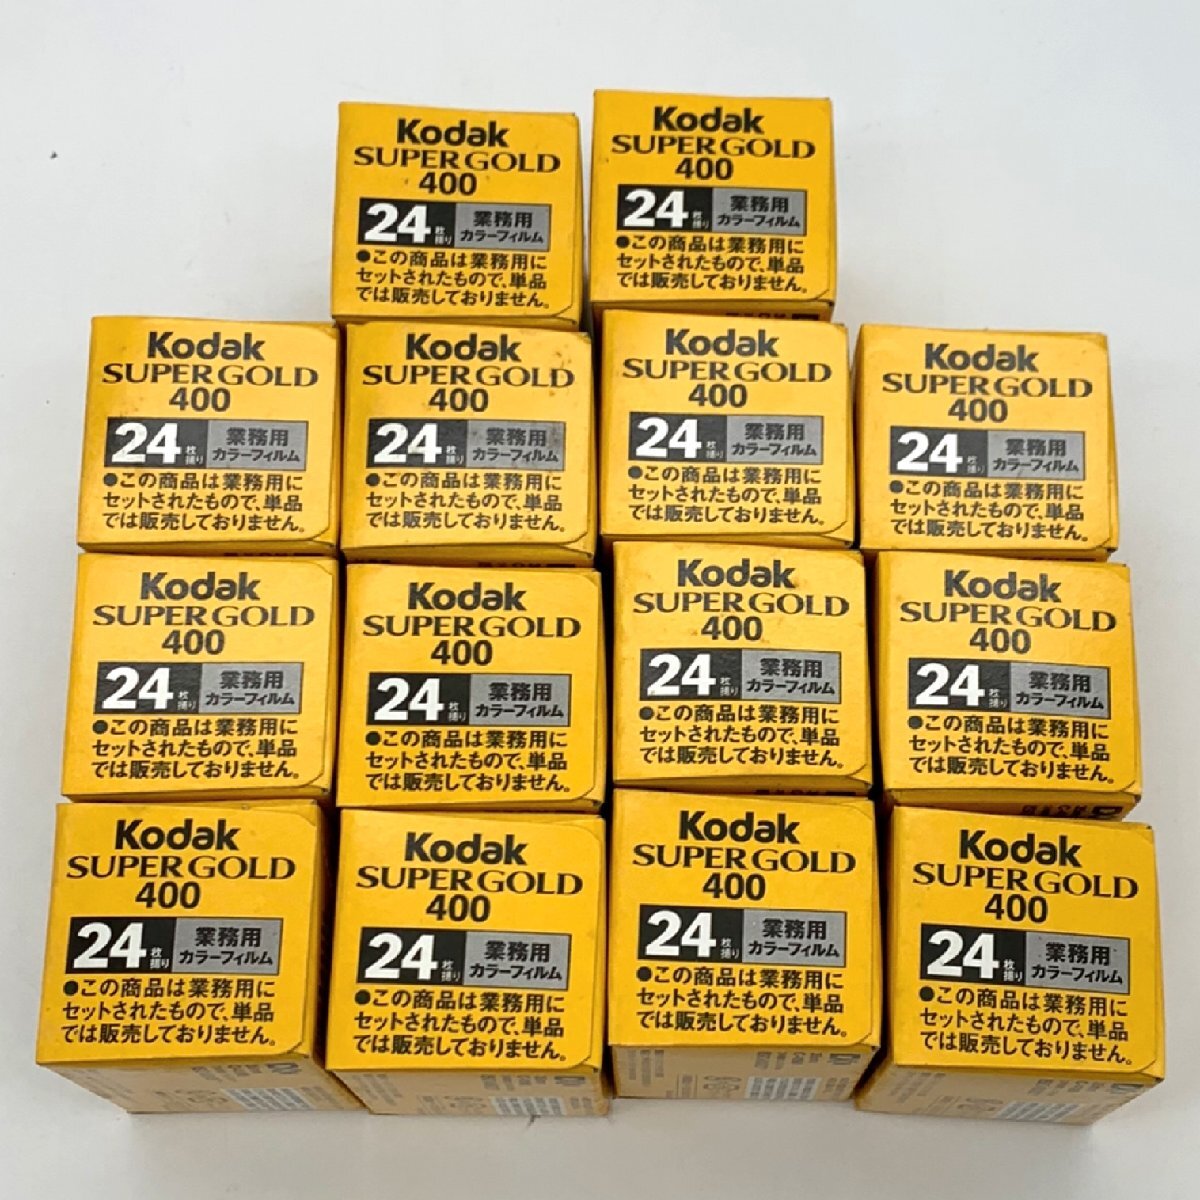 1 иен ~/ не использовался / хранение товар /Kodak/ko Duck /SUPER GOLD/400/24 листов ../ для бизнеса цвет плёнка / окончание срока действия / плёнка /14 пункт / суммировать / Junk /I120